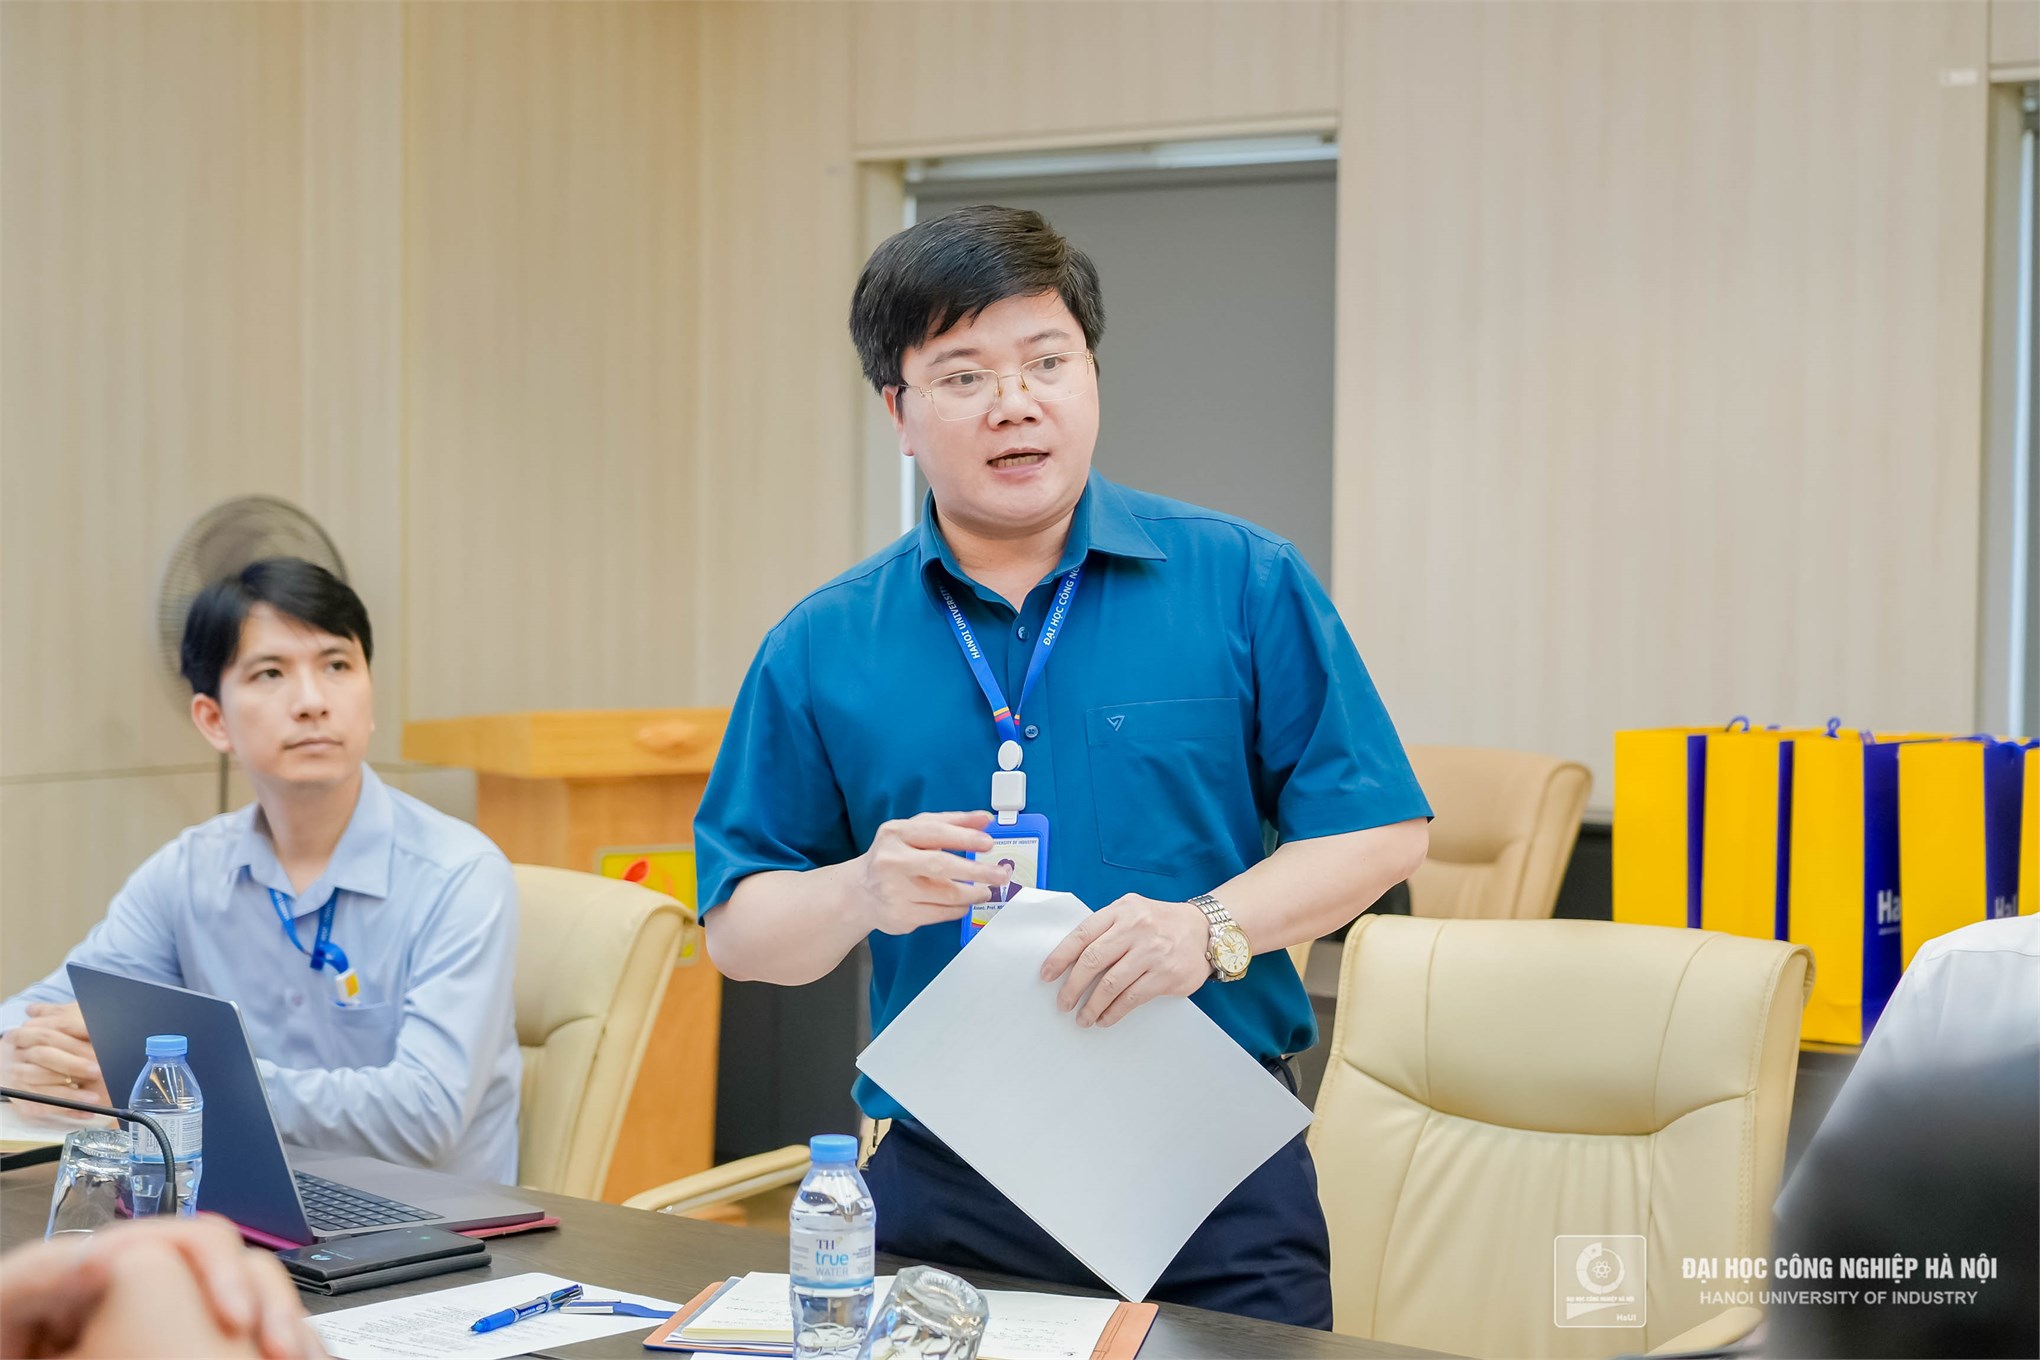 Sở Khoa học và Công nghệ thành phố Thái Bình thăm và làm việc tại Đại học Công nghiệp Hà Nội